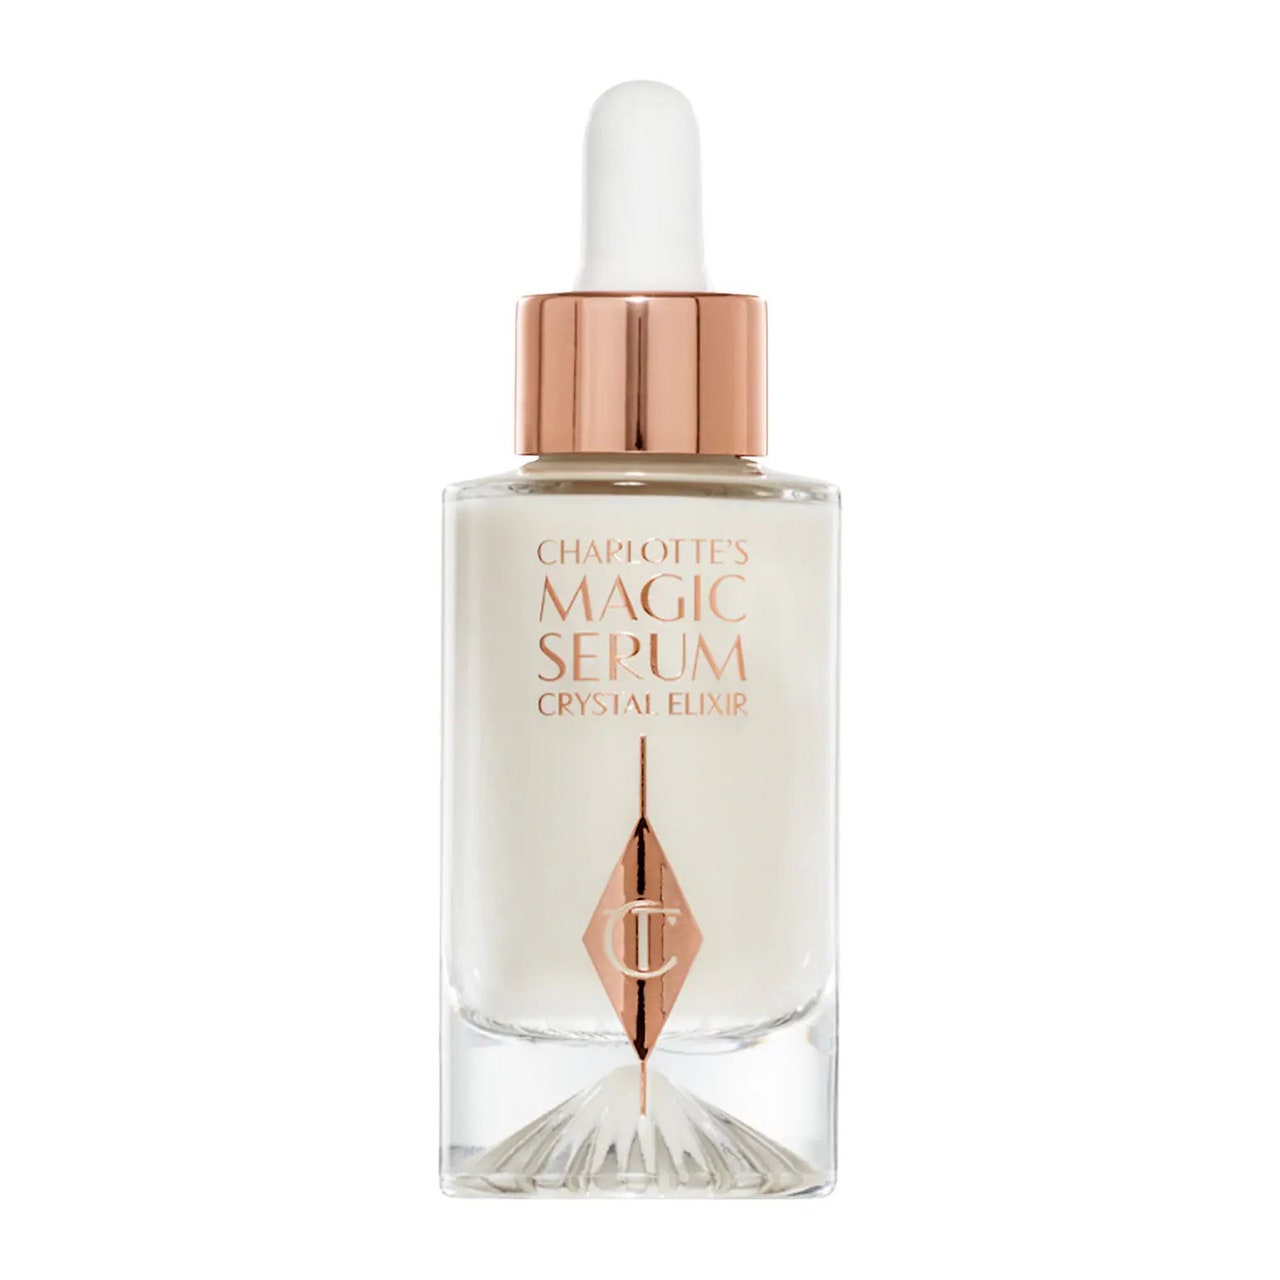 Charlotte Tilbury Magic Serum Crystal Elixir klare Flasche mit weißem Serum mit weißer und roségoldener Kappe auf weißem Hintergrund